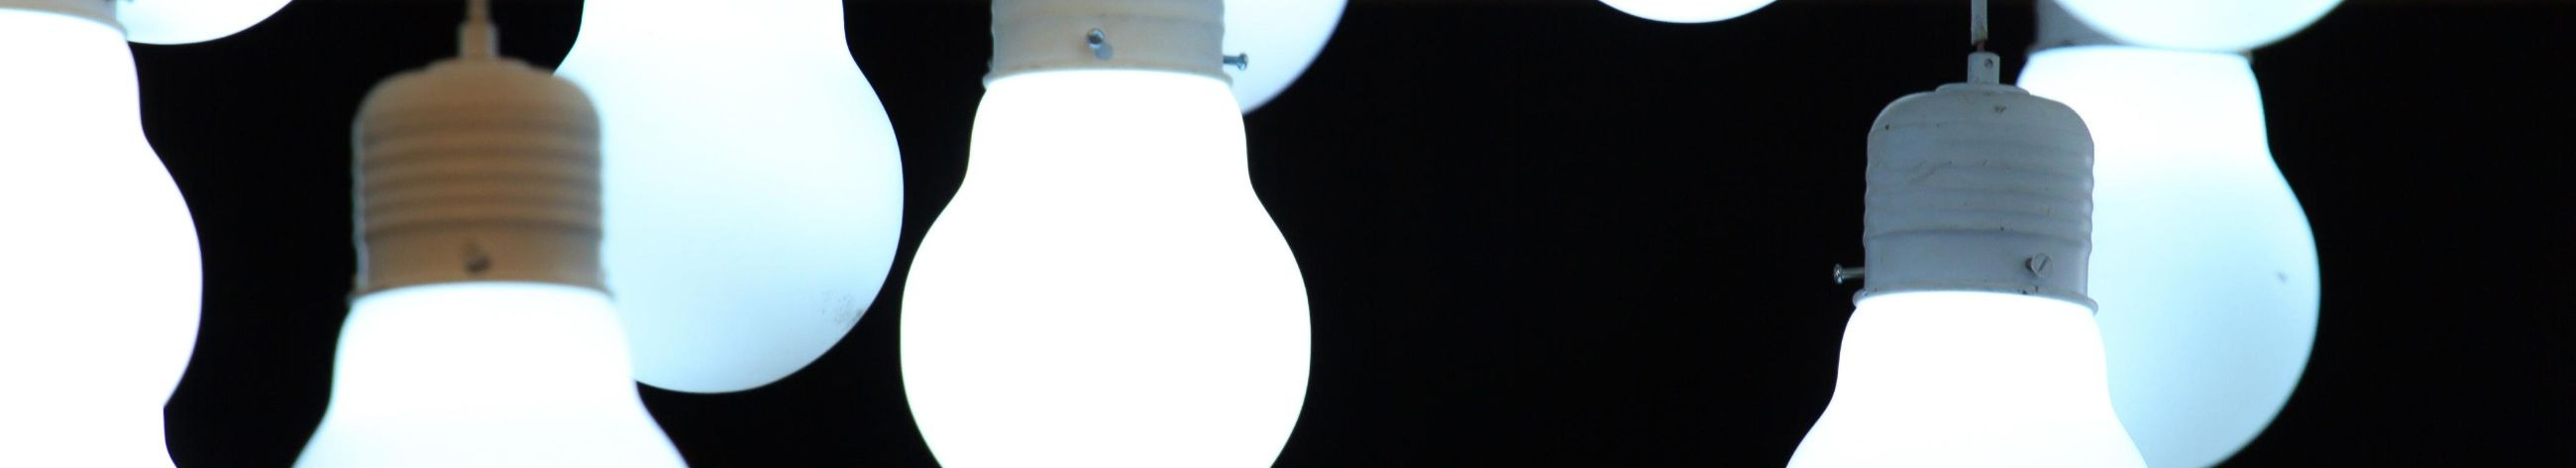 Oleme spetsialiseerunud kvaliteetsete LED-valgustite ja juhtimissüsteemide pakkumisele.